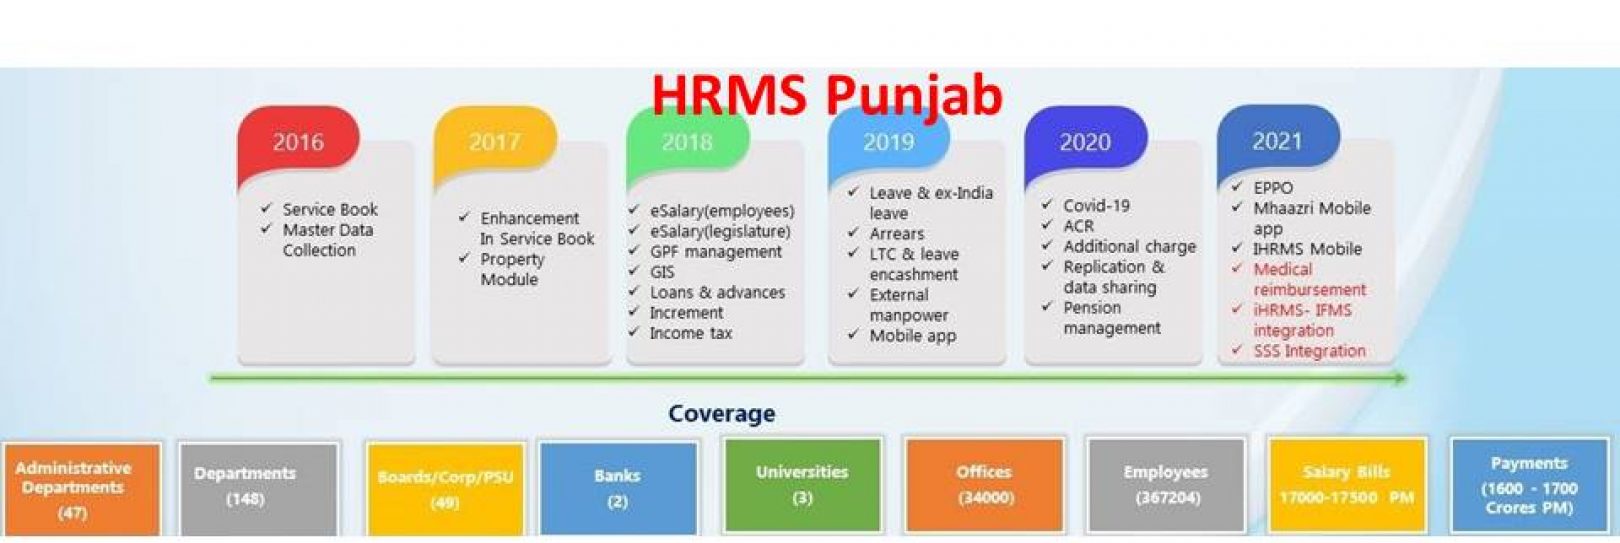 HRMS Punjab